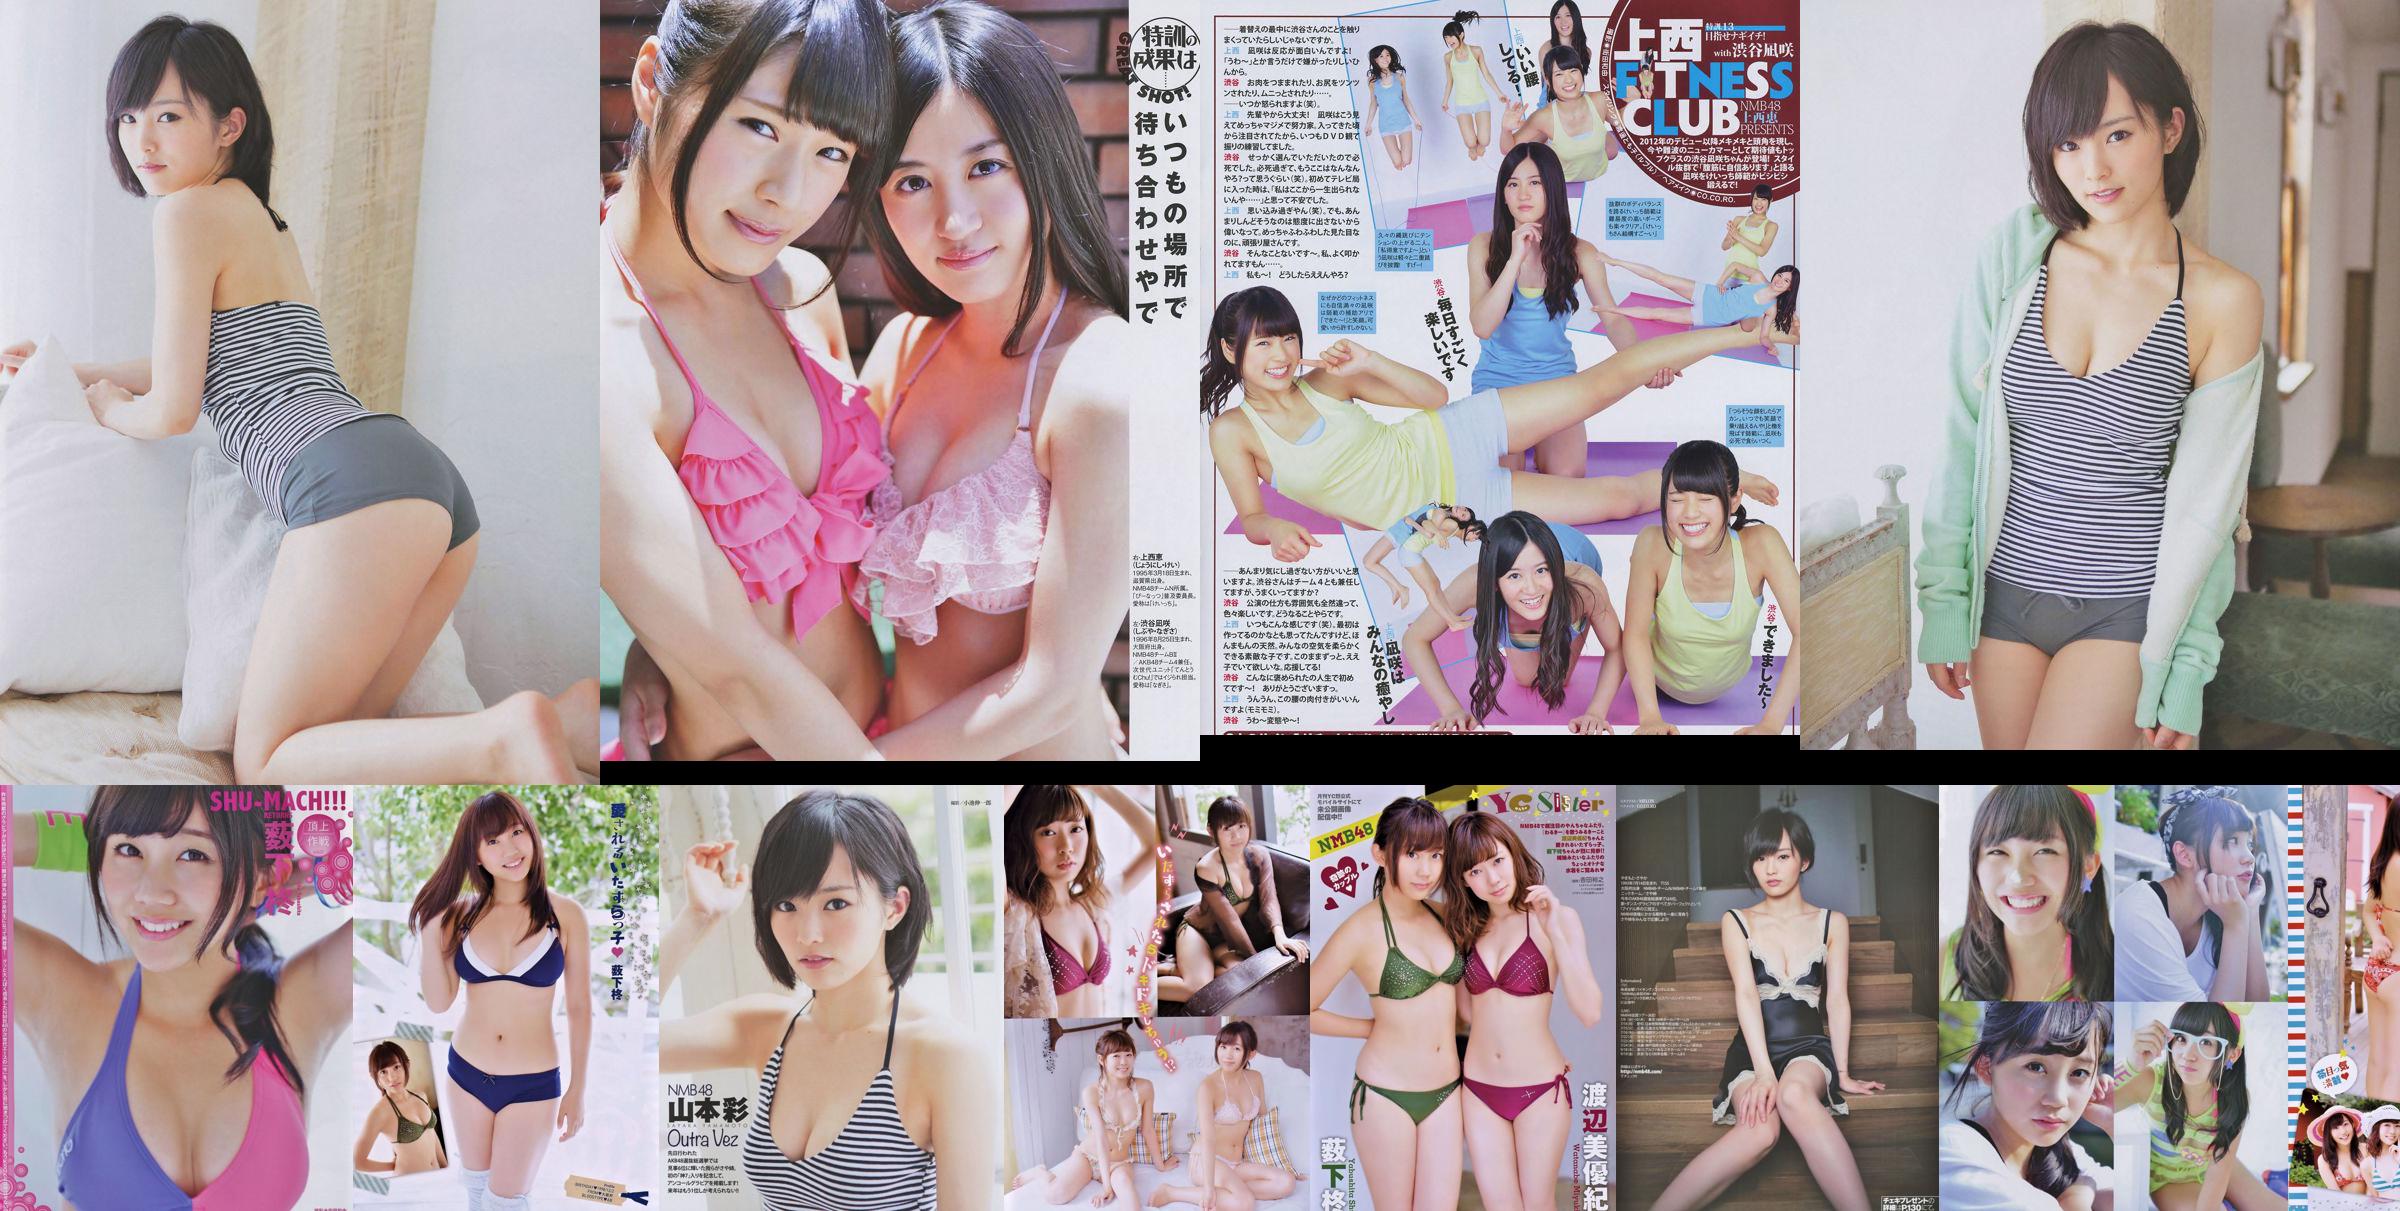 [Joven Campeona Retsu] Shu Yabushita Miyuki Watanabe 2014 No.10 Fotografía No.33b1a9 Página 1